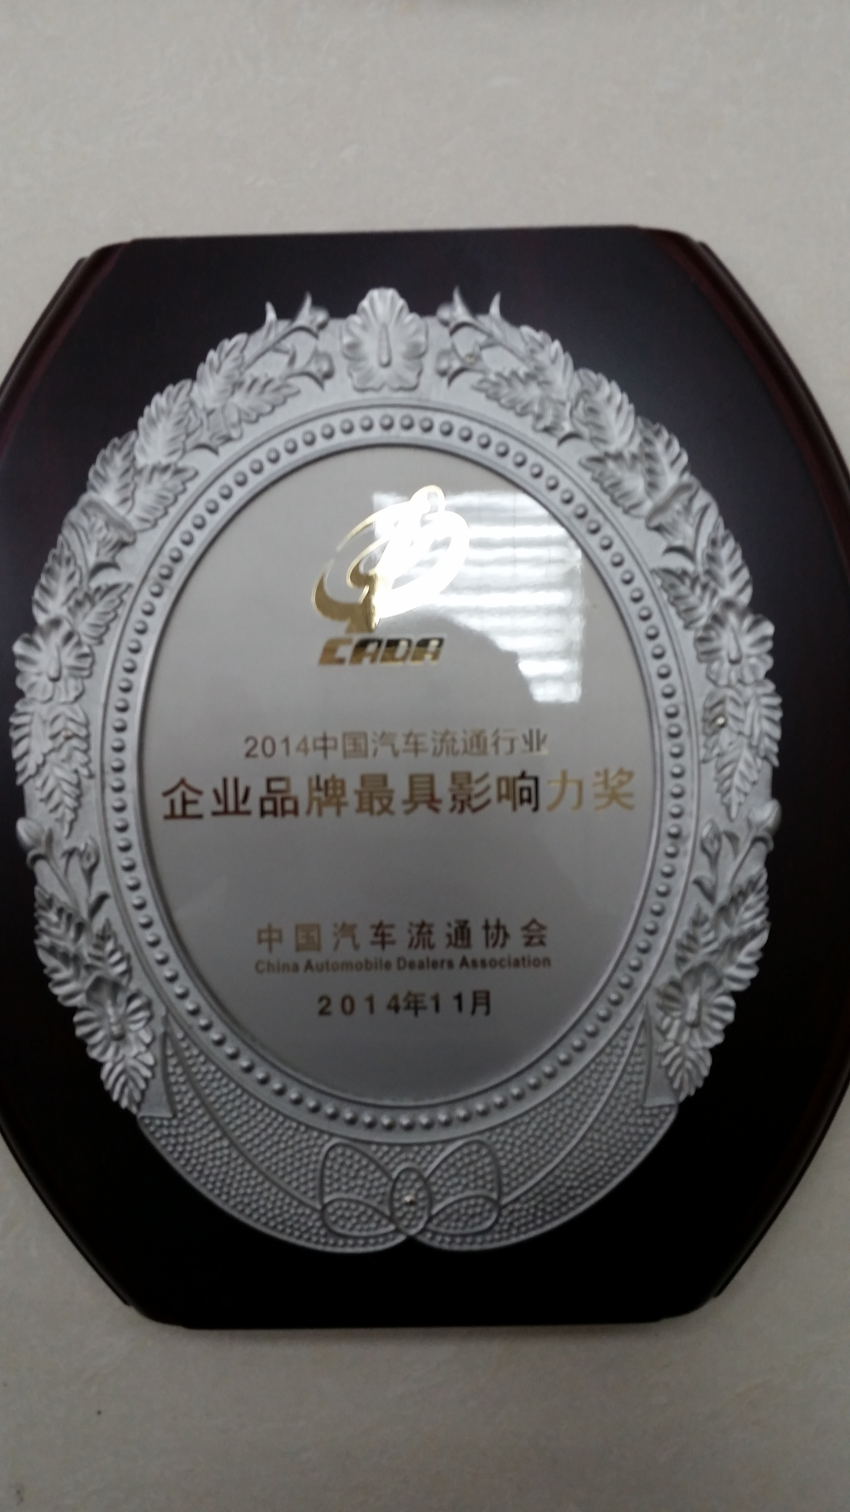 2014年榮獲中國汽車流通行業“企業品牌最具影響力獎